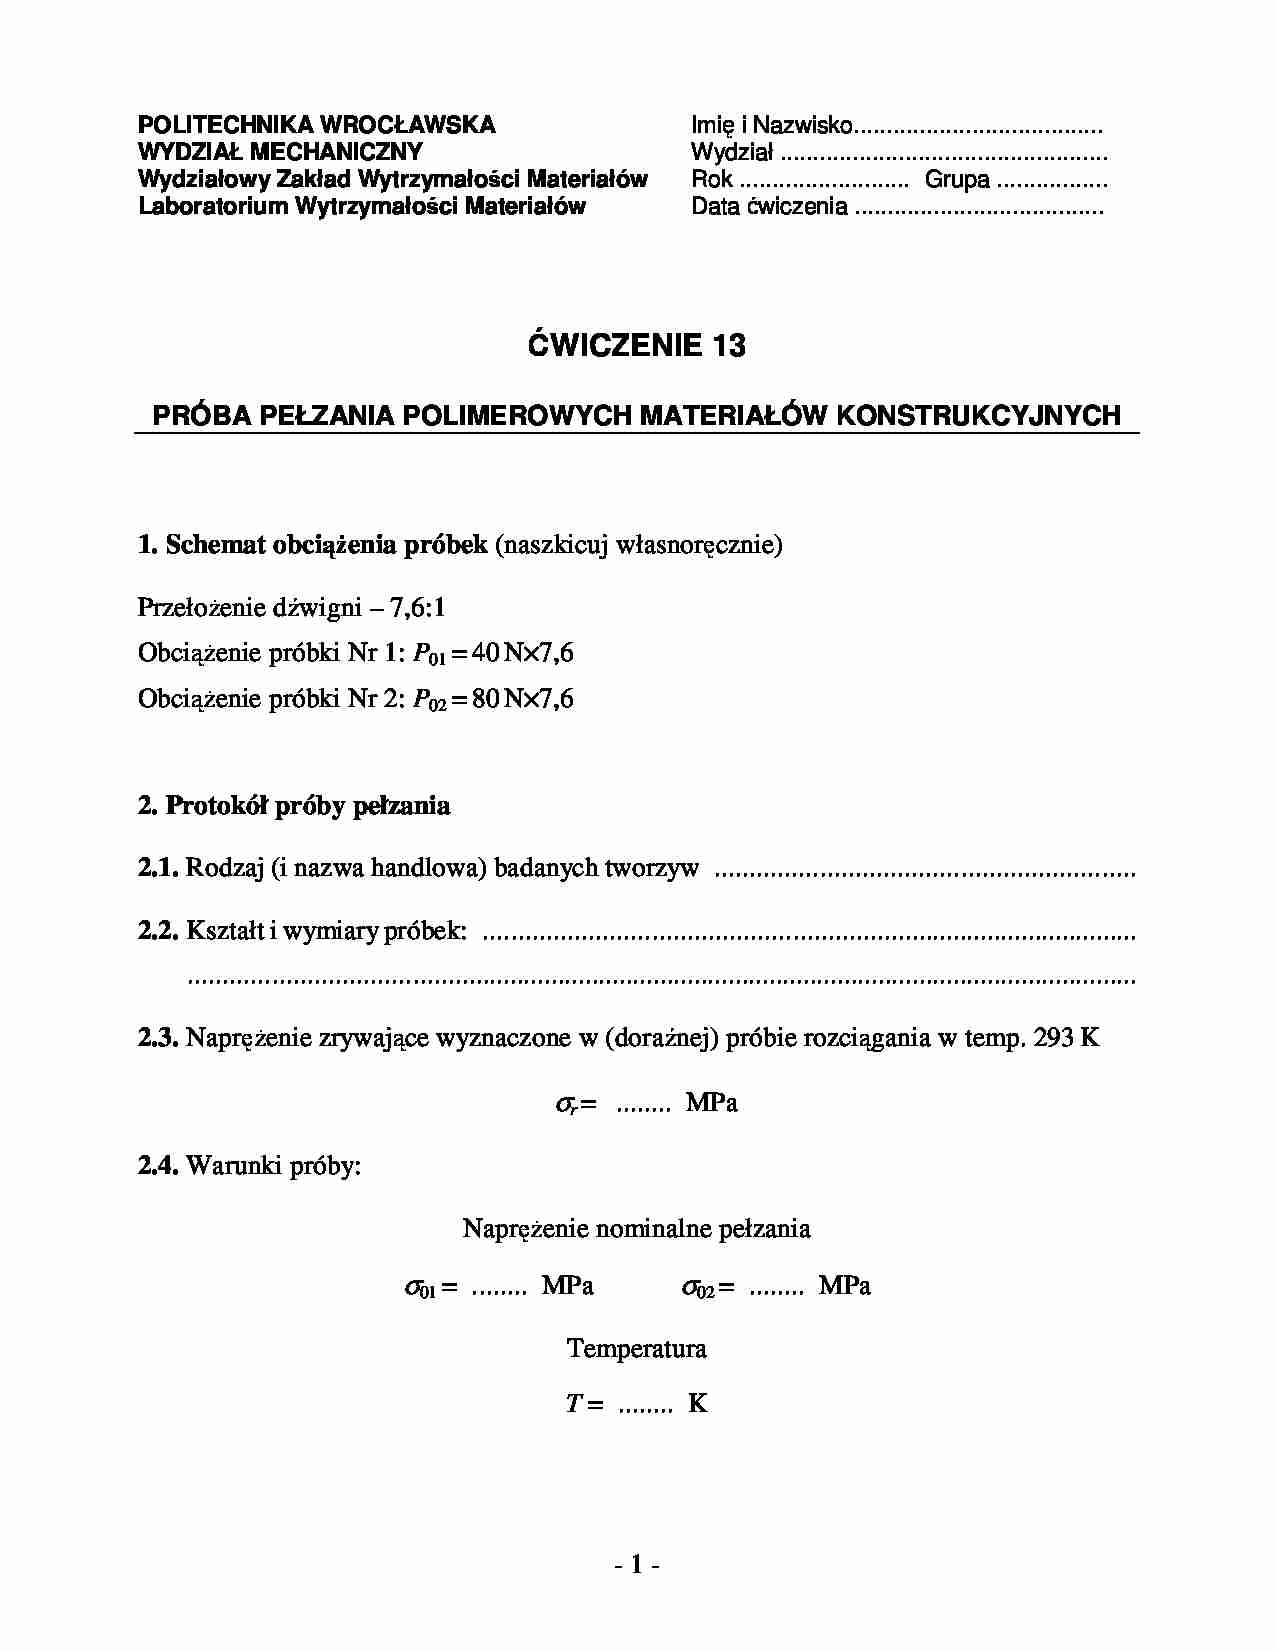 Próba pełzania polimerowych materiałów konstrukcyjnych - sprawozdanie - strona 1